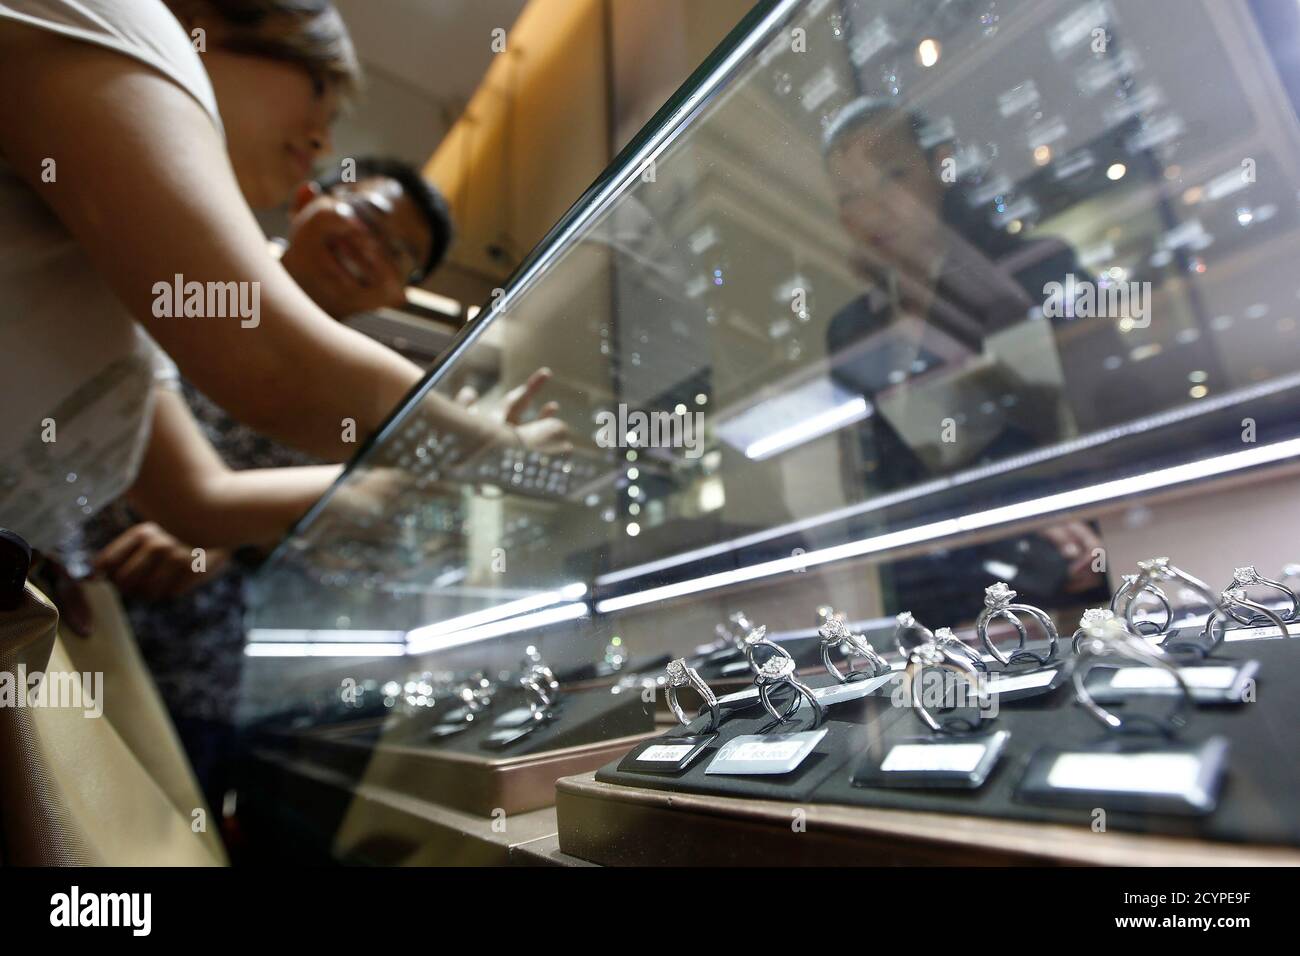 Una coppia seleziona anelli di diamante in un negozio Chow Tai Fook a Shanghai 16 settembre 2013. Secondo i dati forniti dalla società di ricerca di mercato Euromonitor, il mercato cinese dei diamanti, ora il secondo più grande al mondo dopo gli Stati Uniti, è più che triplicato a 22.8 miliardi di dollari negli ultimi cinque anni, costantemente triplicato rispetto all'oro e ben oltre il tasso di crescita dei 465 miliardi di yuan cinesi (76 miliardi di dollari) settore della gioielleria. Foto scattata il 16 settembre 2013. Per abbinare la funzione CINA-DIAMANTI/ REUTERS/Aly Song (CINA - Tag: PRODOTTI COMMERCIALI) Foto Stock